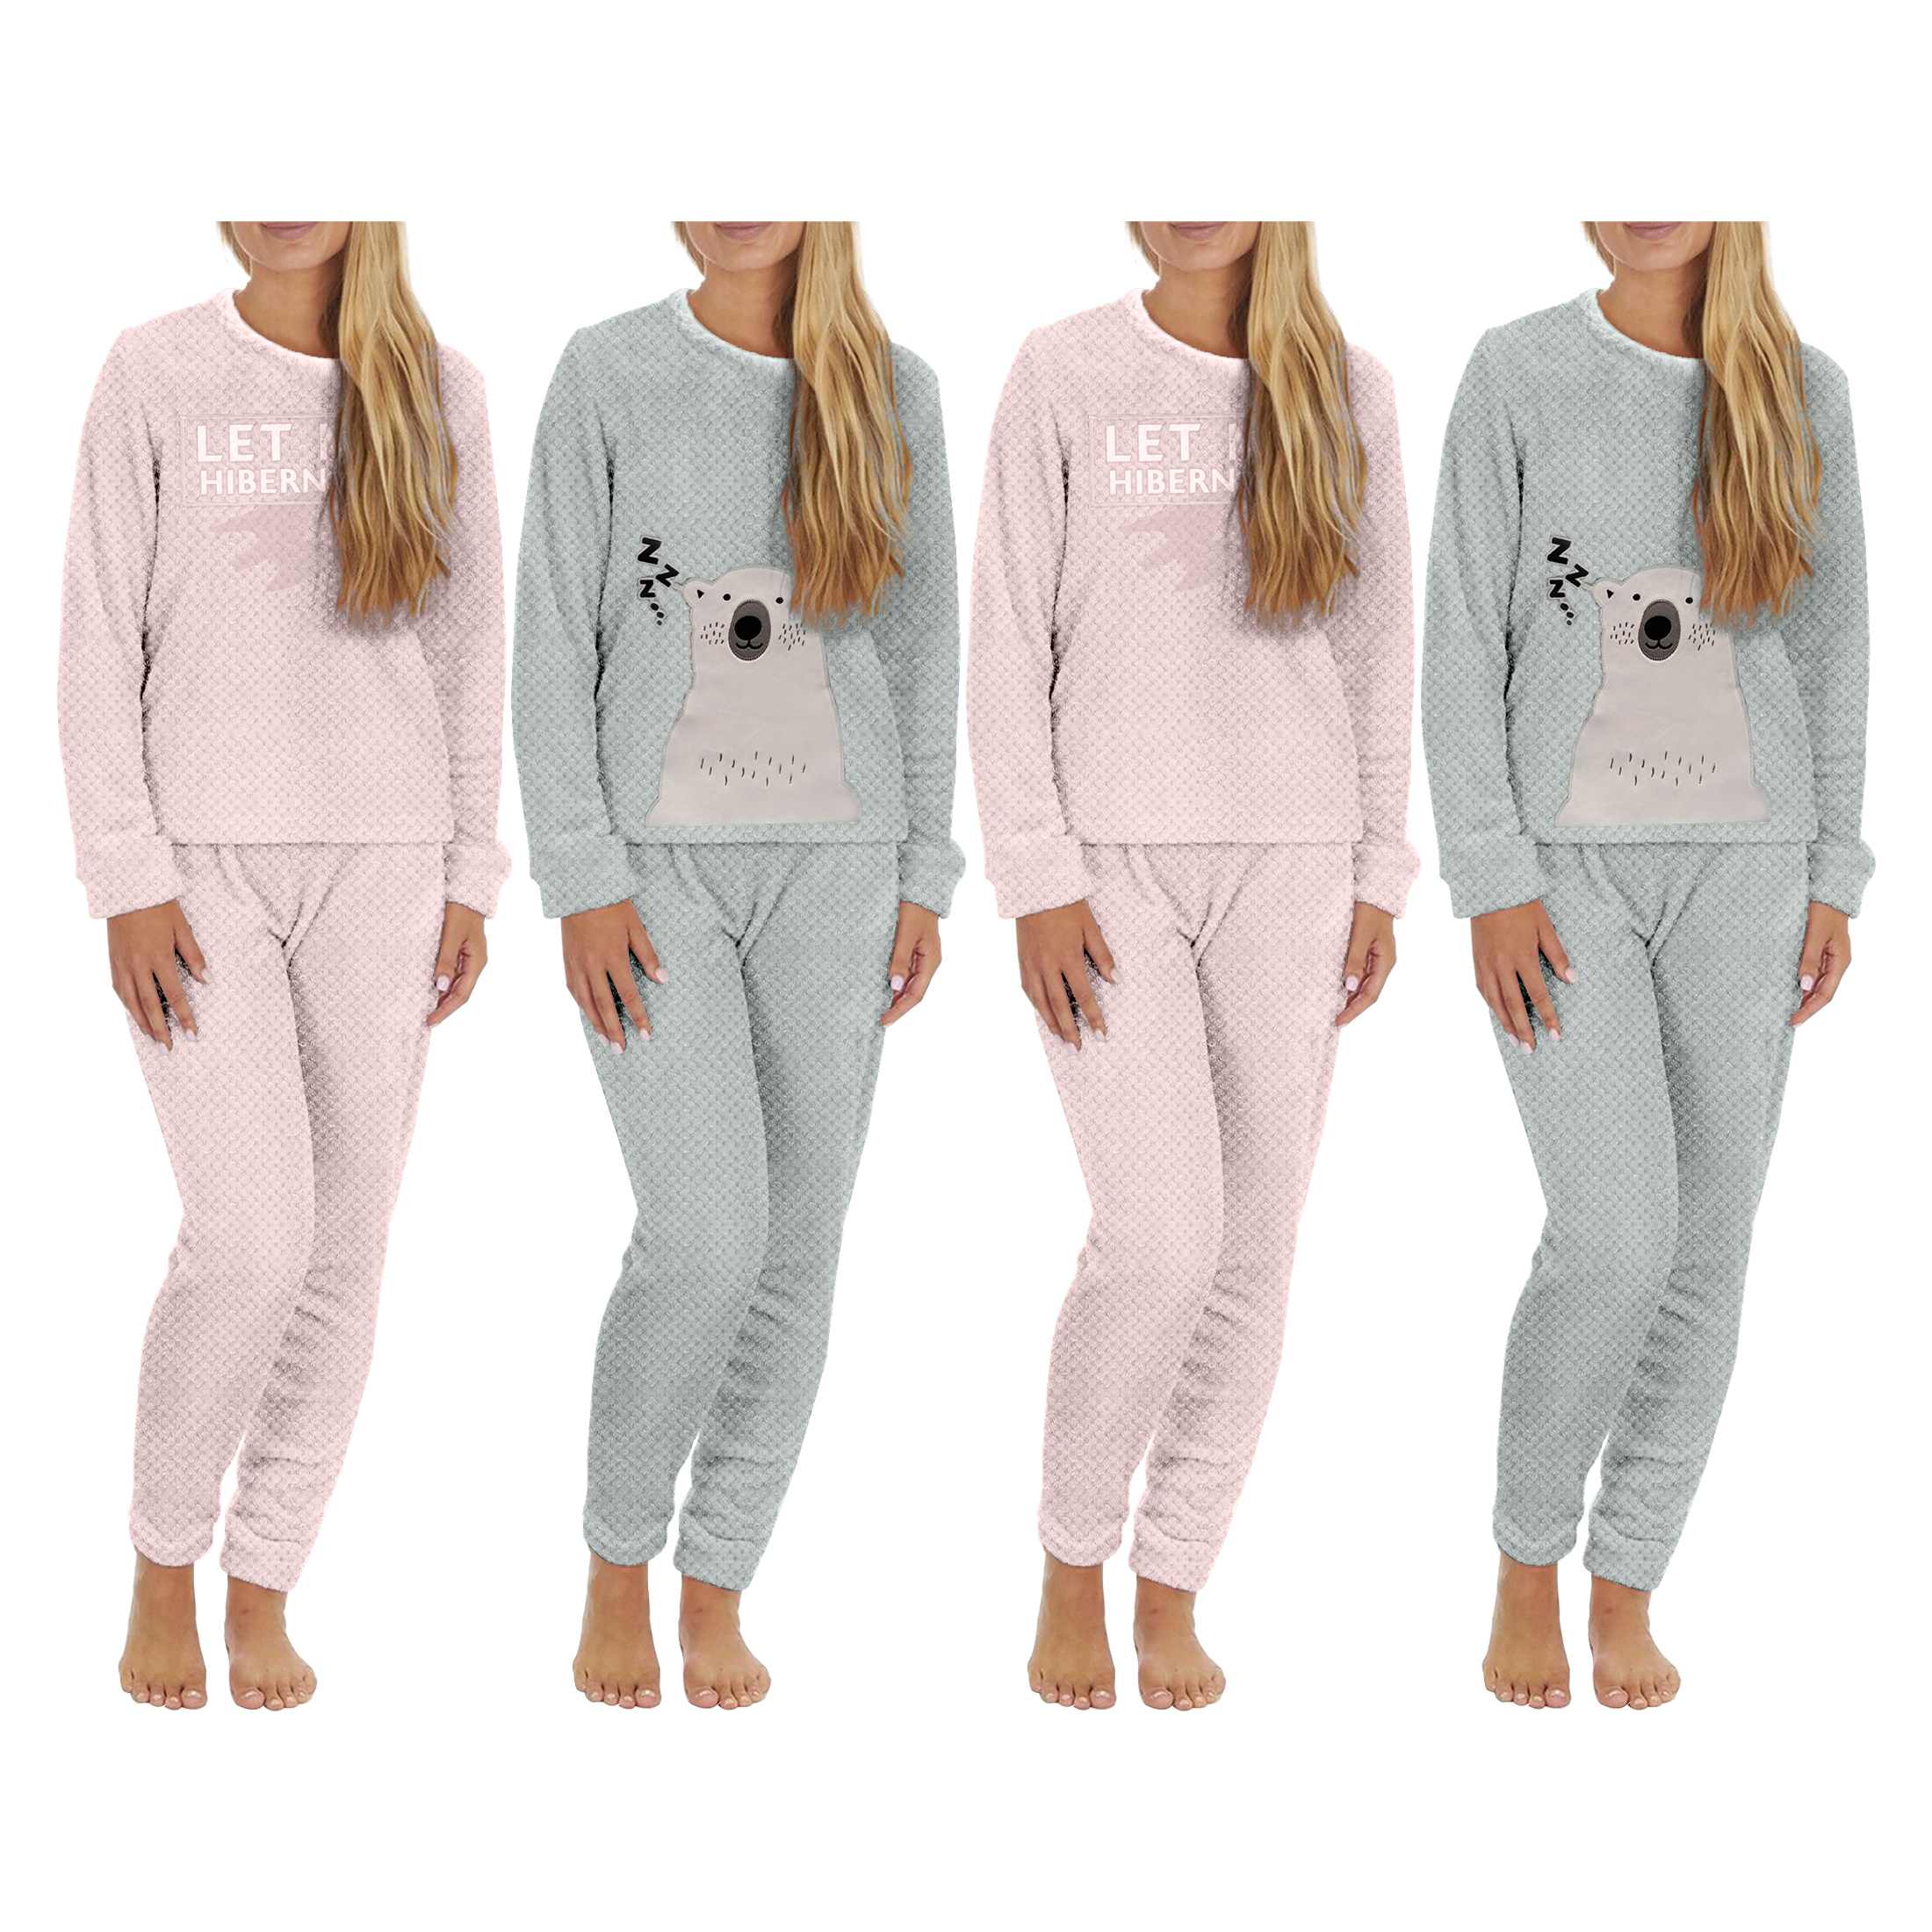 4-Piece: Plush Popcorn Knit Top And Jogger Pants Pajama Set - Blue & Pink, X-Large